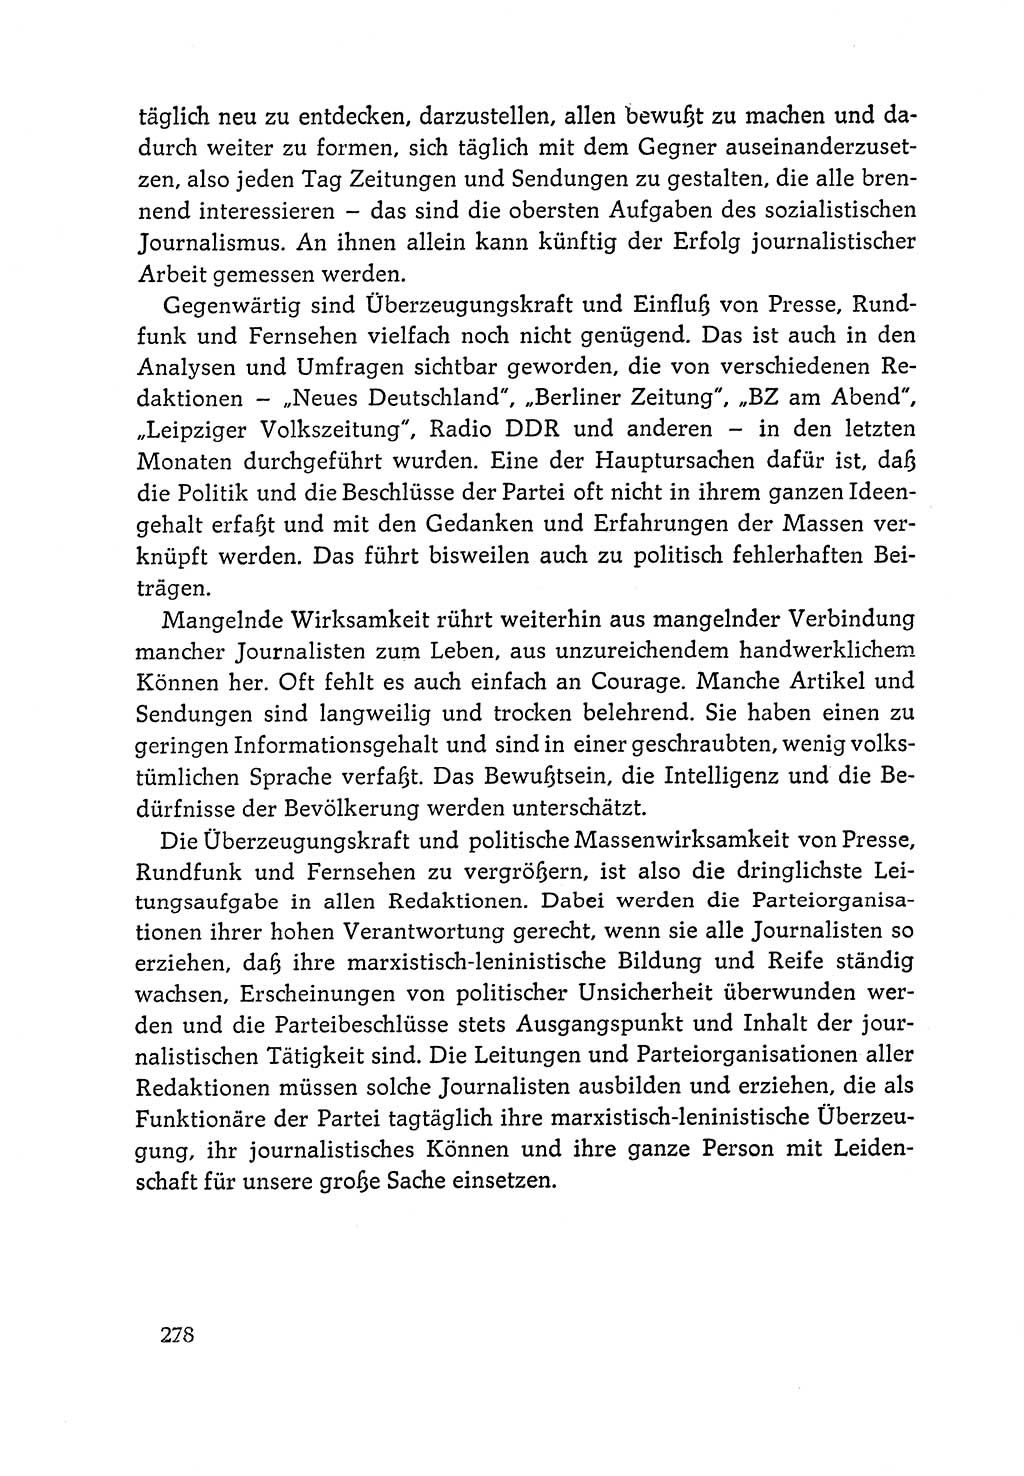 Dokumente der Sozialistischen Einheitspartei Deutschlands (SED) [Deutsche Demokratische Republik (DDR)] 1964-1965, Seite 278 (Dok. SED DDR 1964-1965, S. 278)